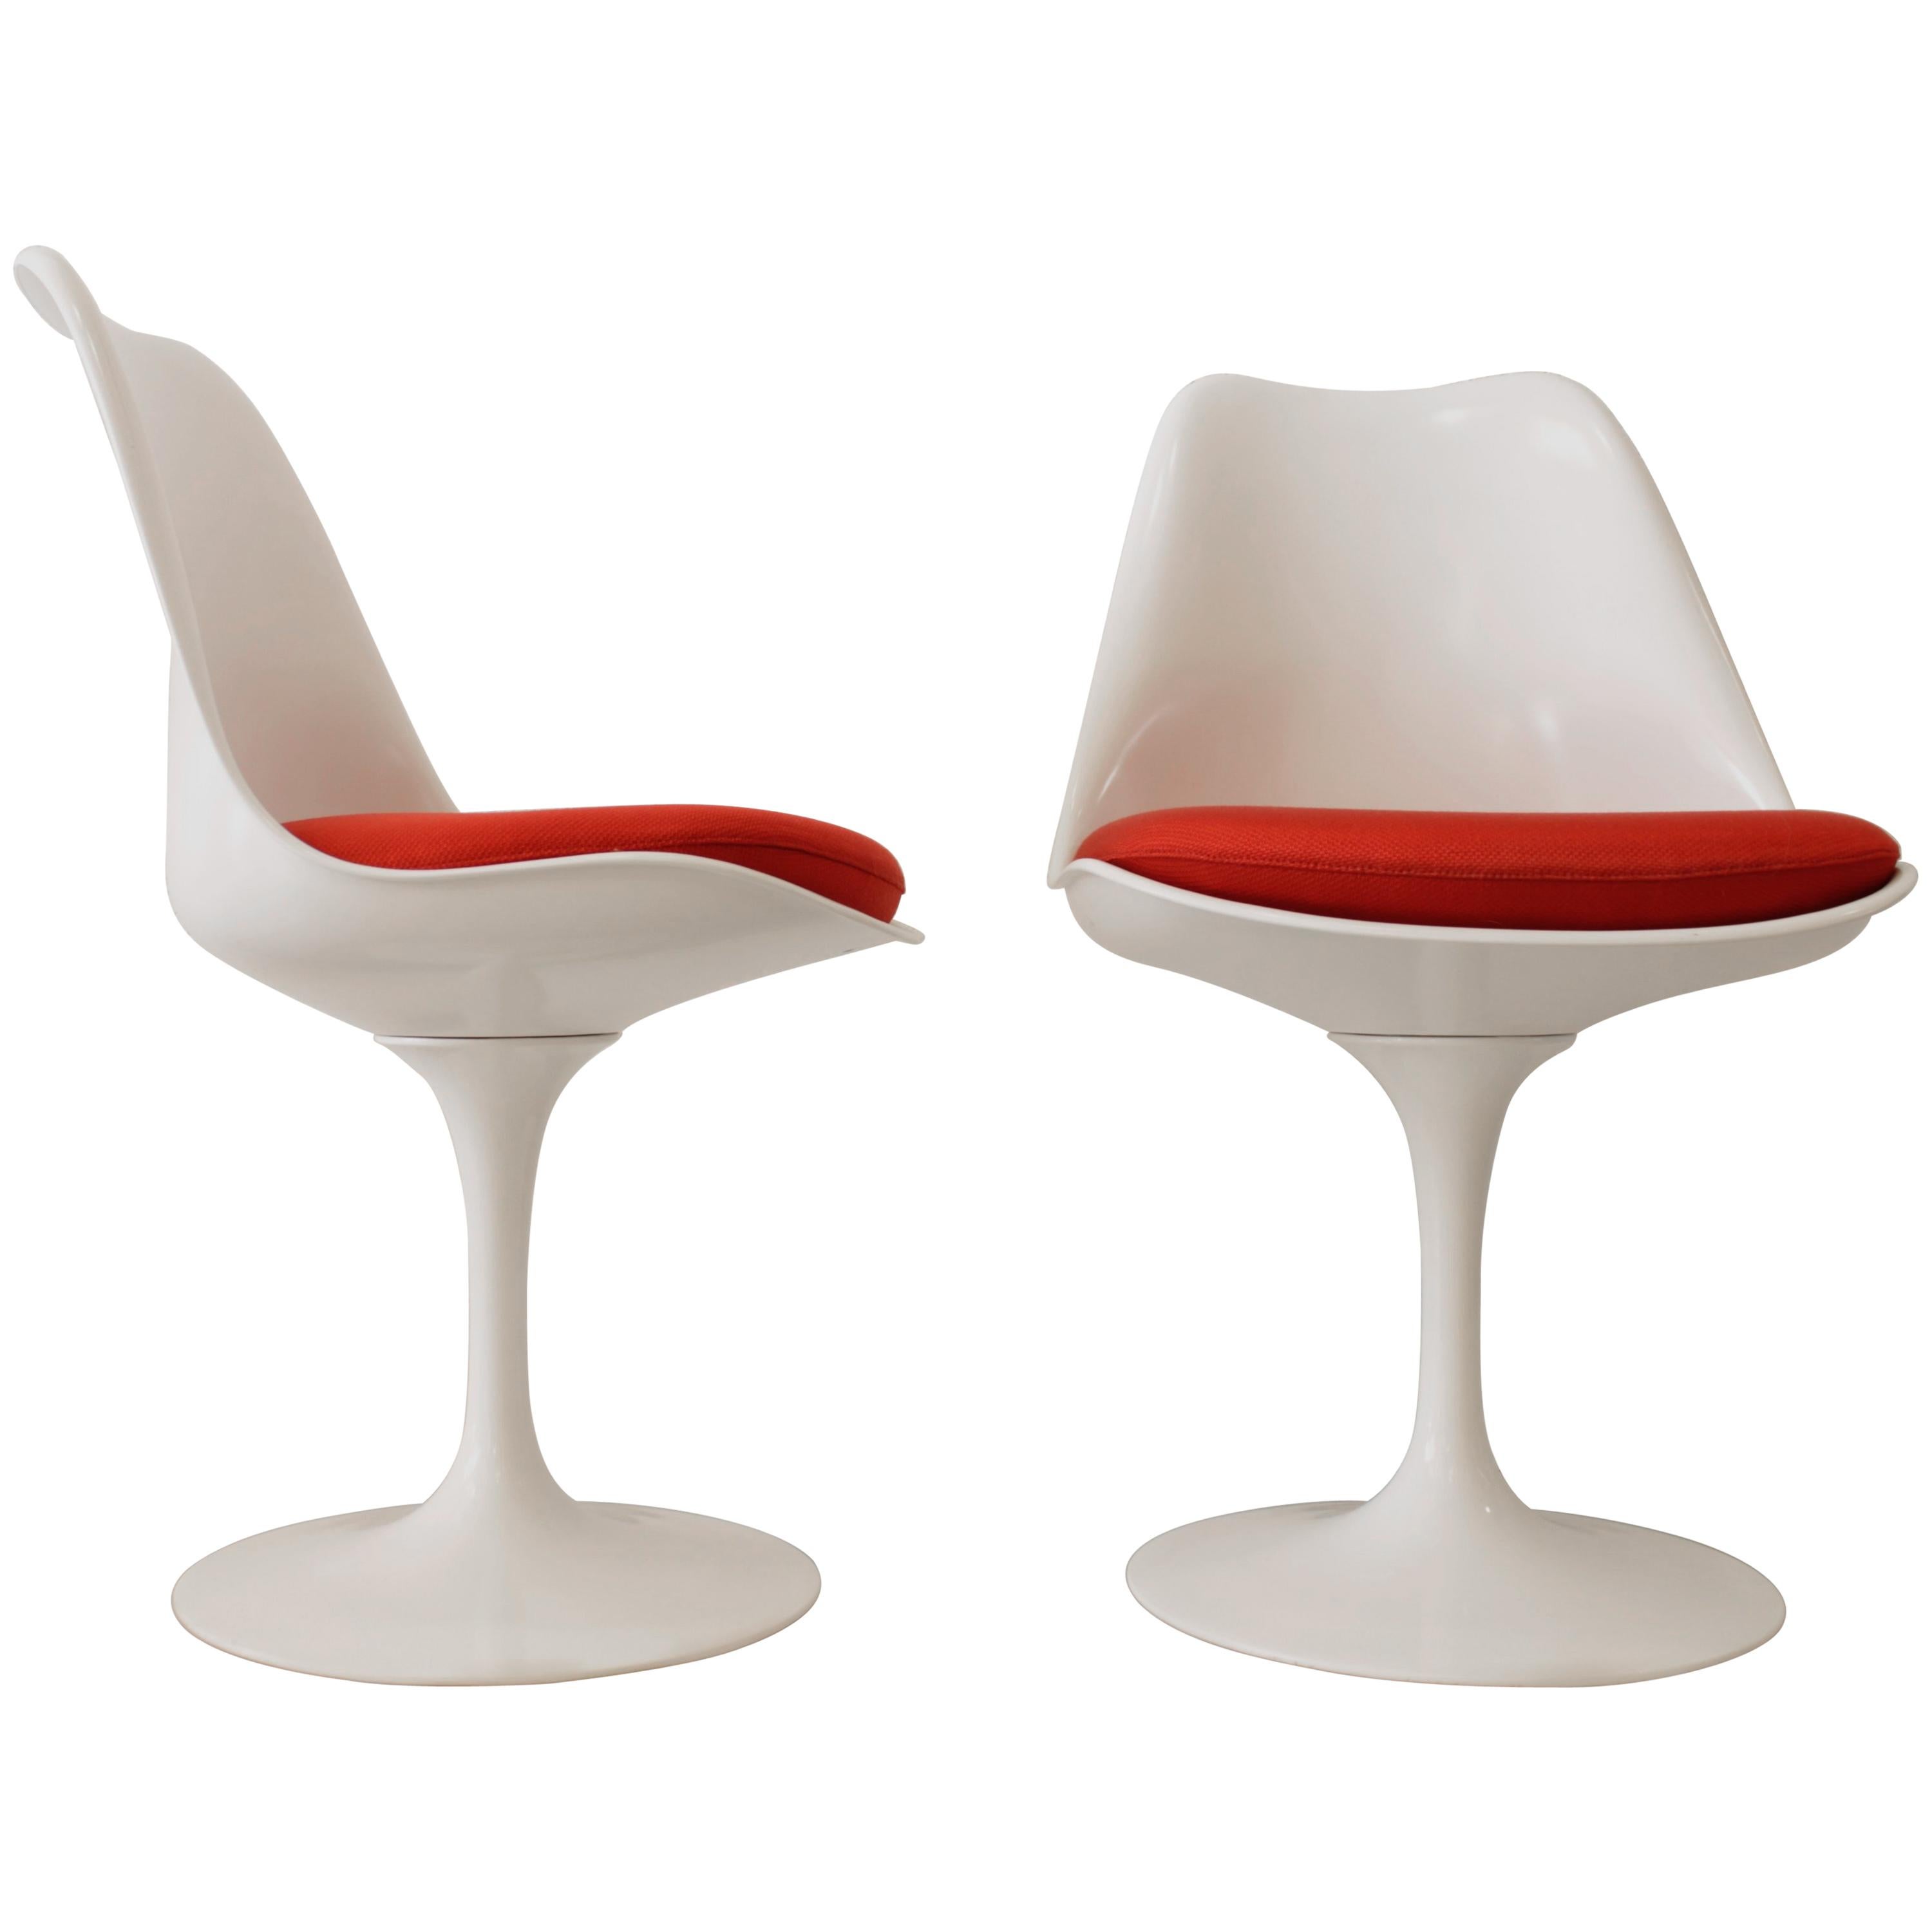 Pair of Tulip Chairs by Eero Saarinen